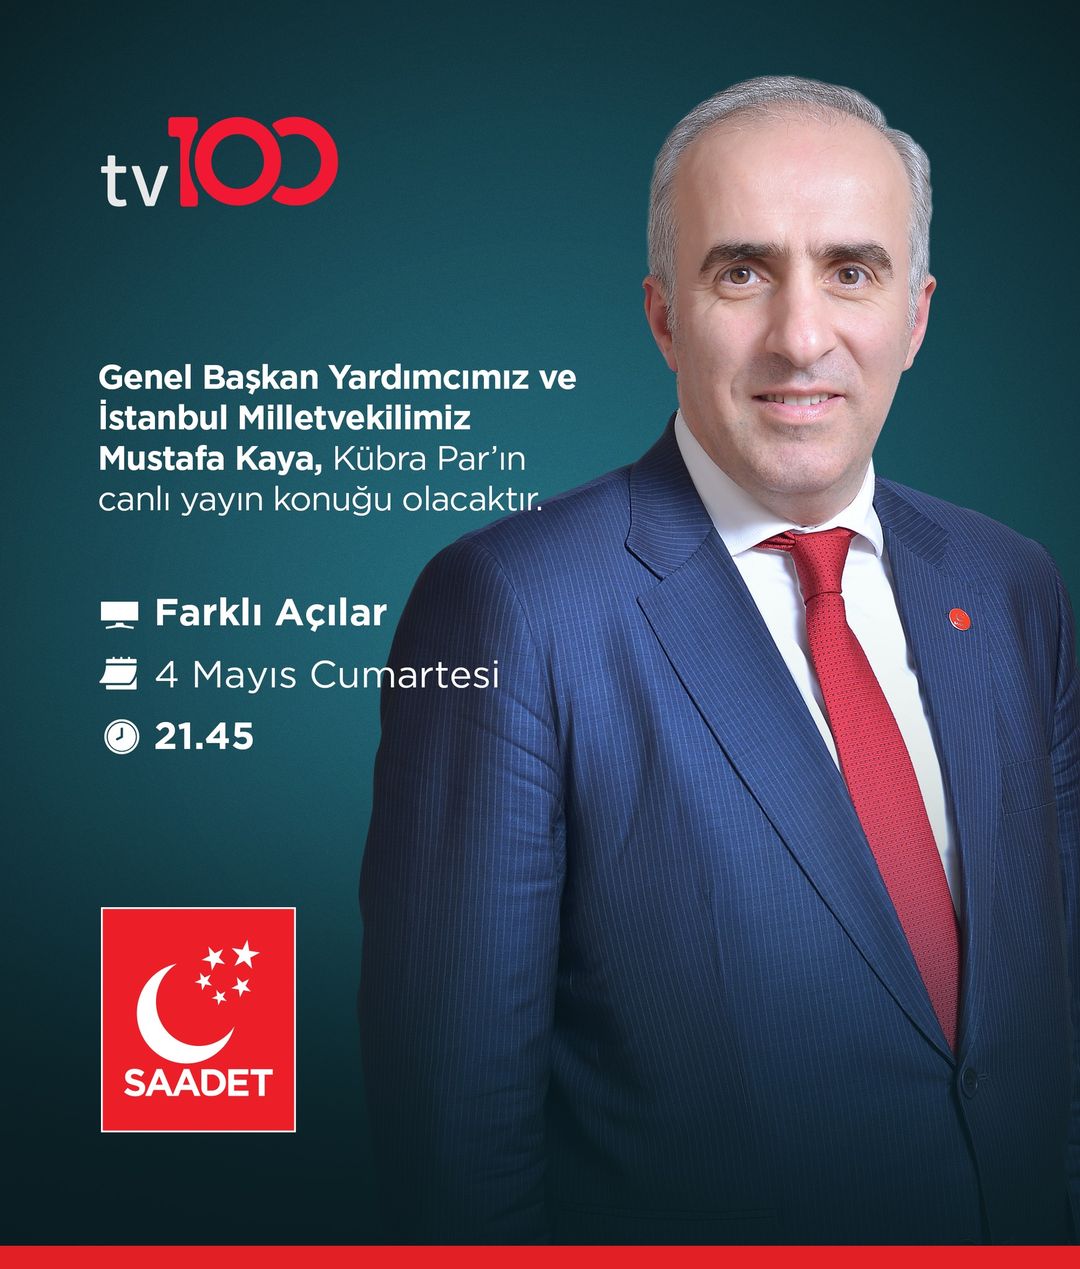 Saadet Partisi Genel Başkan Yardımcısı Mustafa Kaya TV 100'de Canlı Yayında!